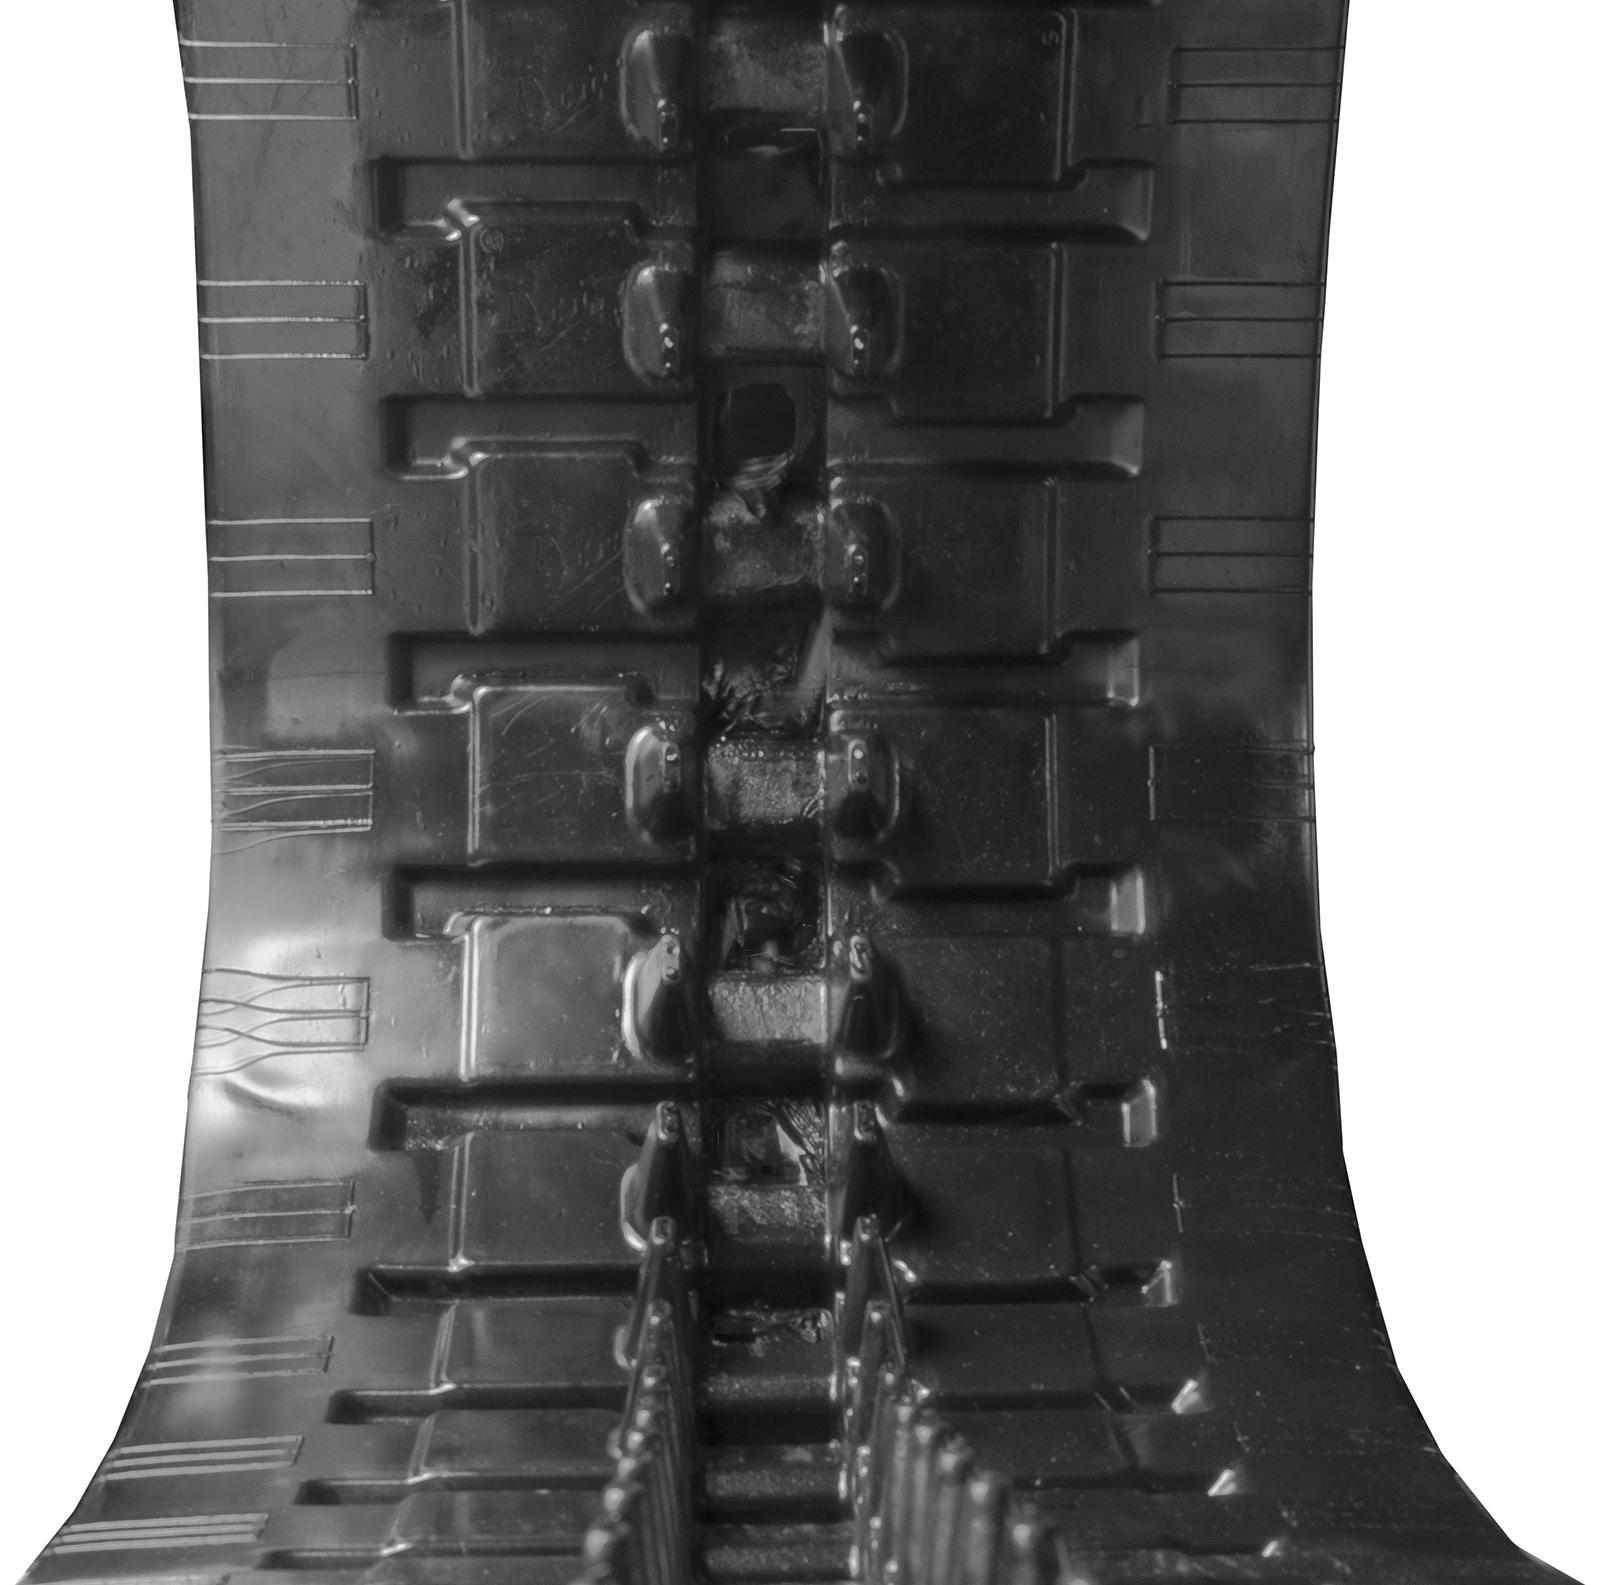 set of 2 18" heavy duty c pattern rubber track (450x100x48)